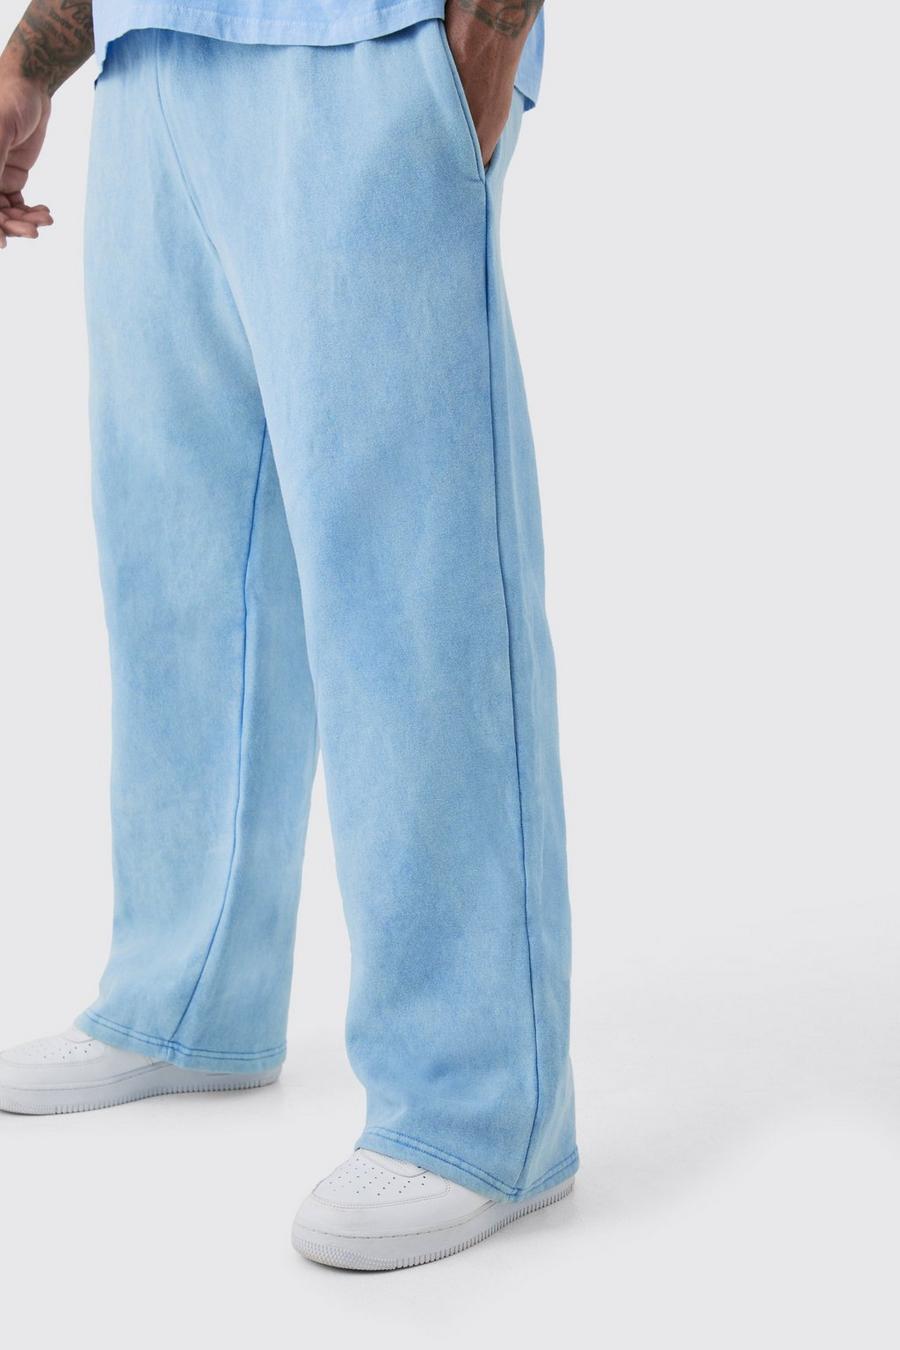 Pantalón deportivo Plus holgado lavado a la piedra, Cornflower blue